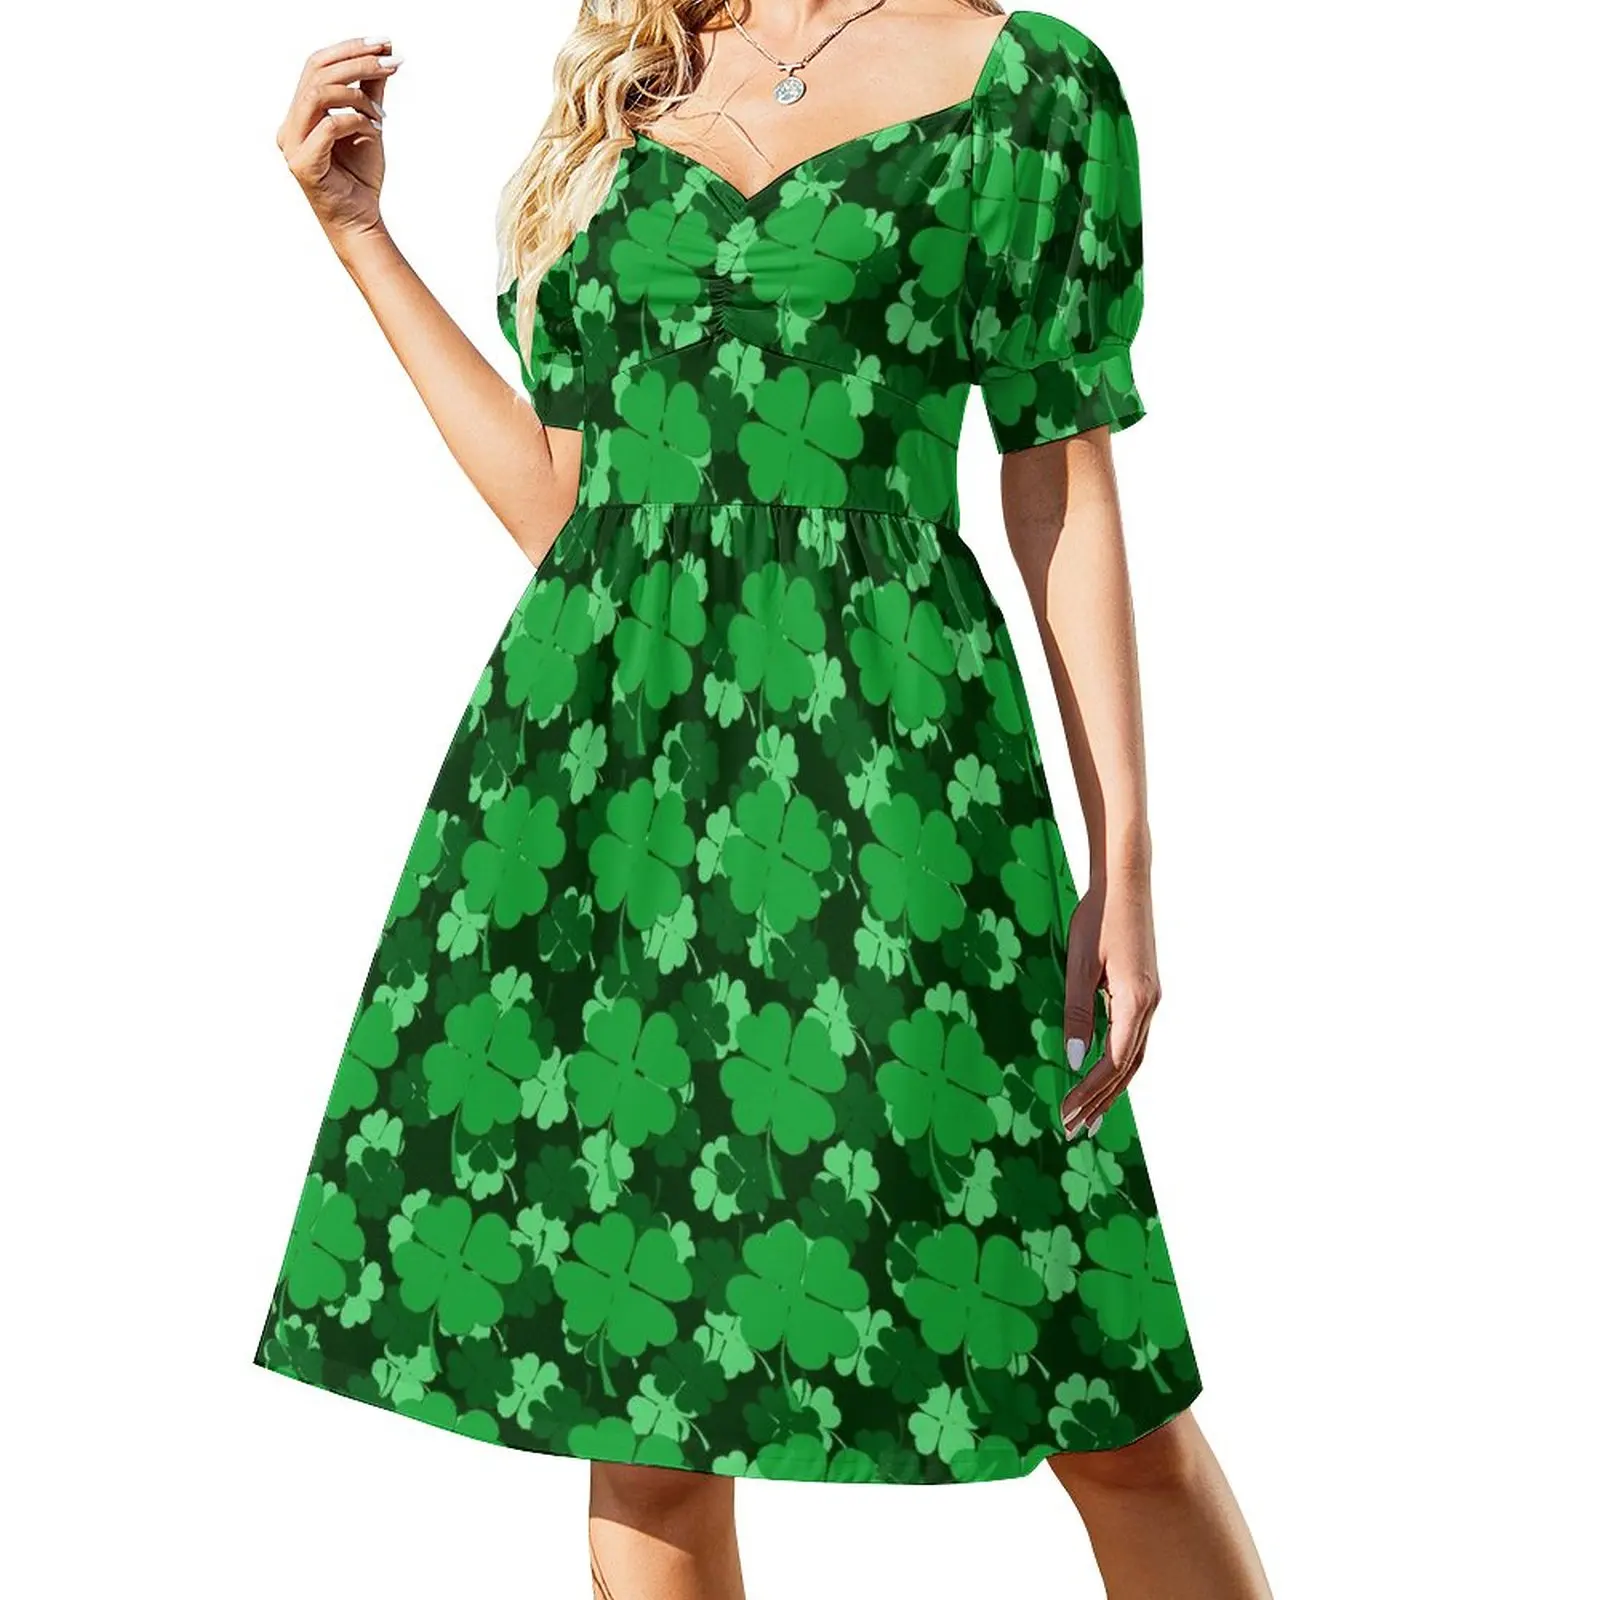 

Платье без рукавов с оттенком зеленого цвета, платье для церемонии, вечерние платья для женщин, женские платья для особых случаев